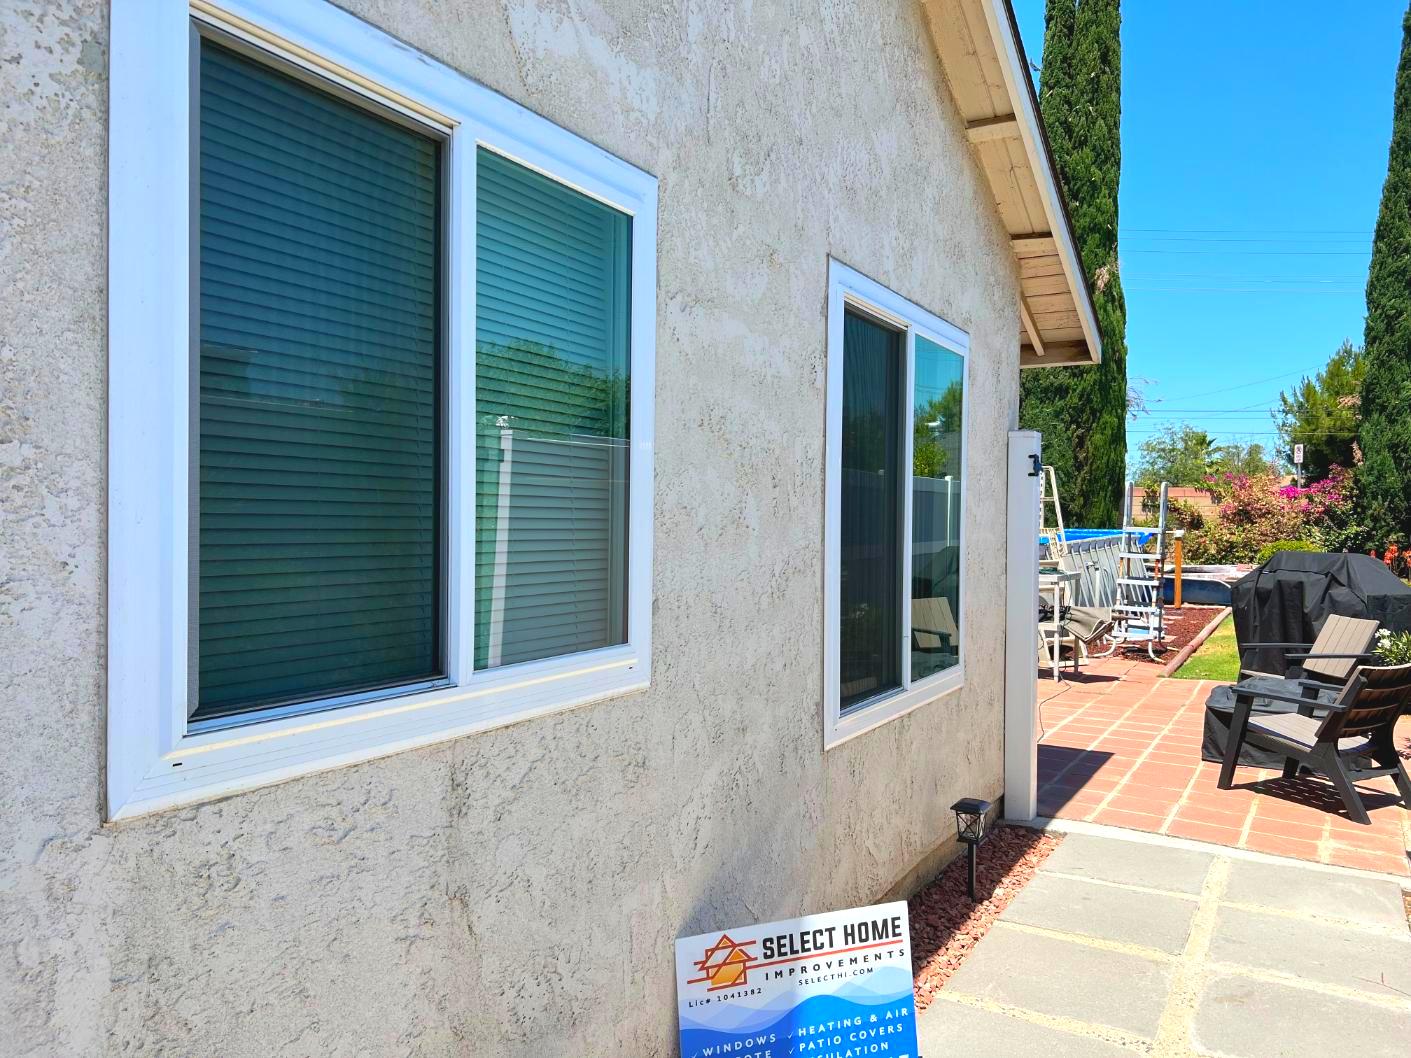 Window & Patio Door Replacement Project in Moreno Valley, CA